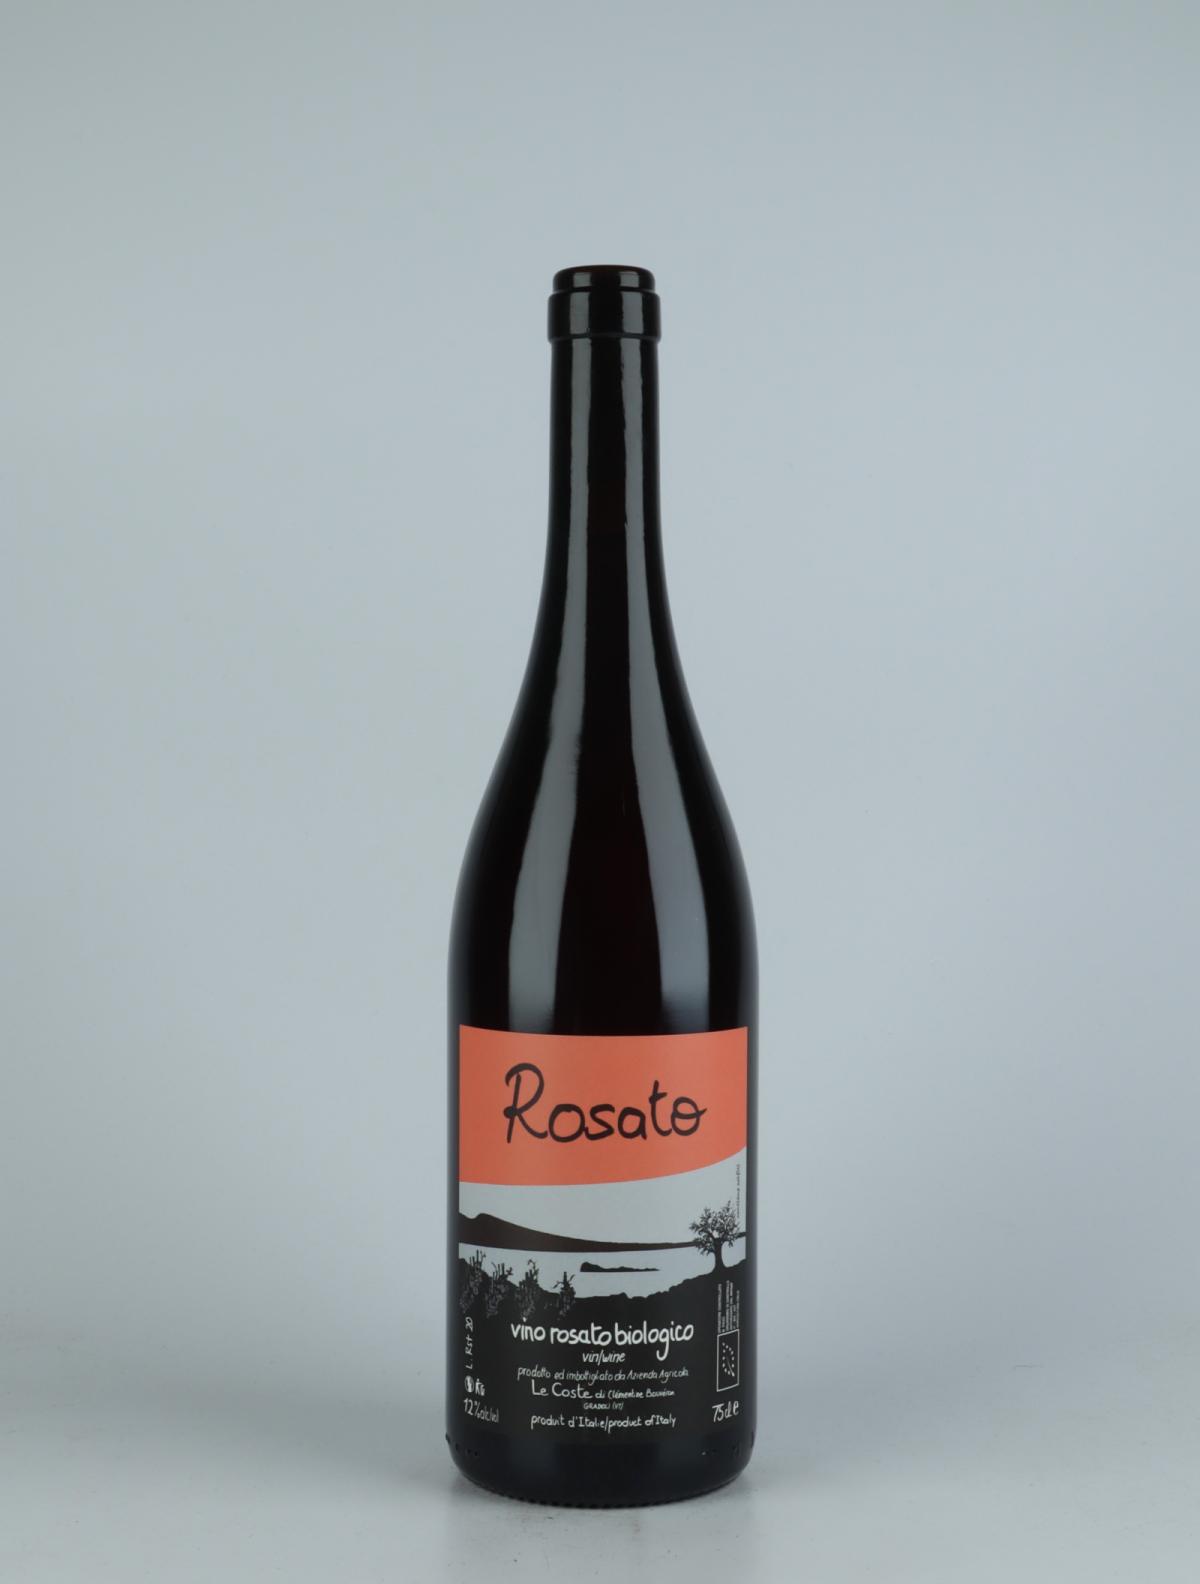 A bottle 2020 Rosato Rosé from Le Coste, Lazio in Italy